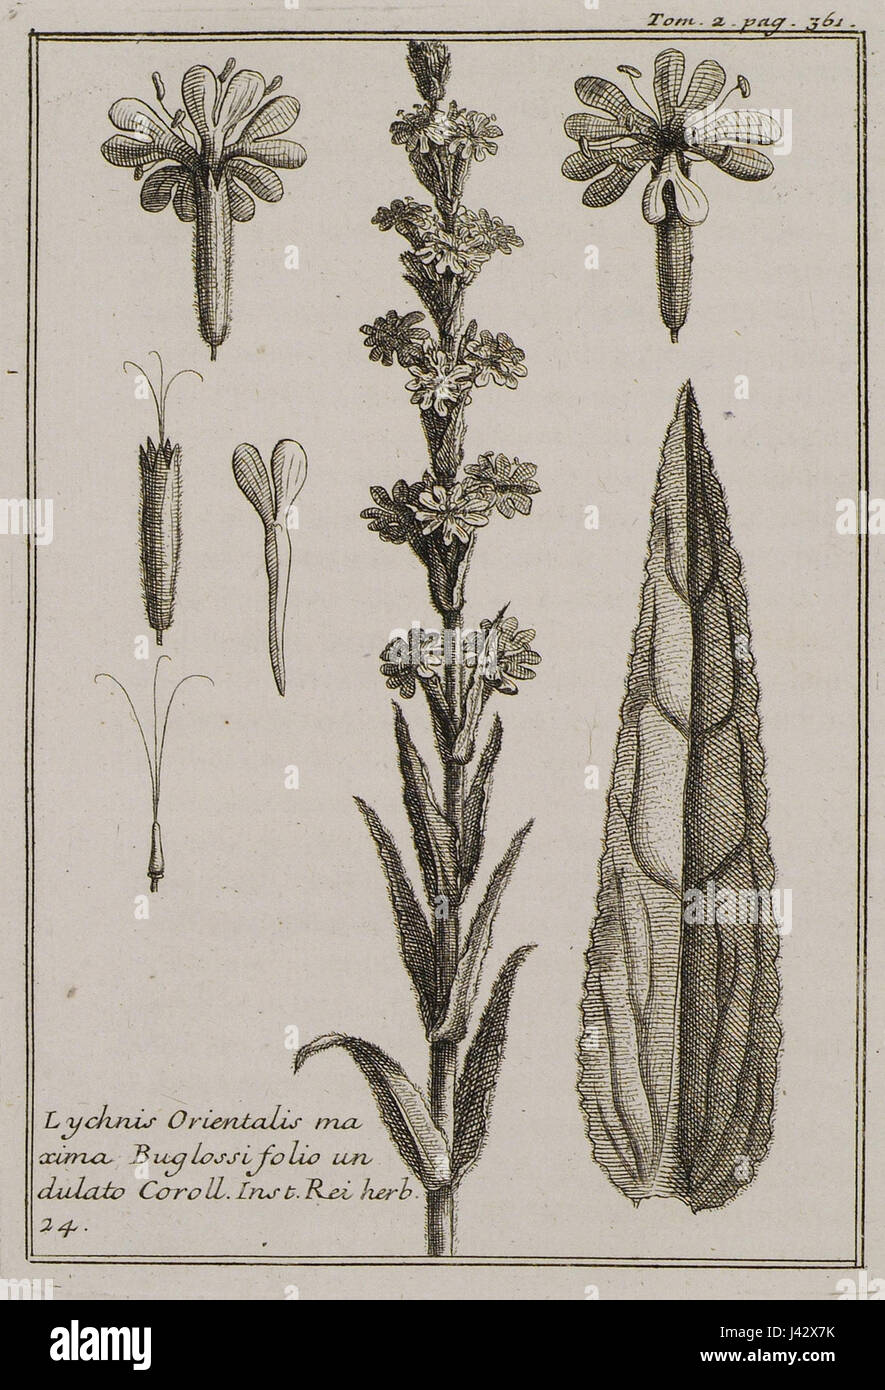 Lychnis Orientalis maxima Buglossi folio undulato Coroll Inst Rei herb 24   Tournefort Joseph Pitton De   1717 Stock Photo